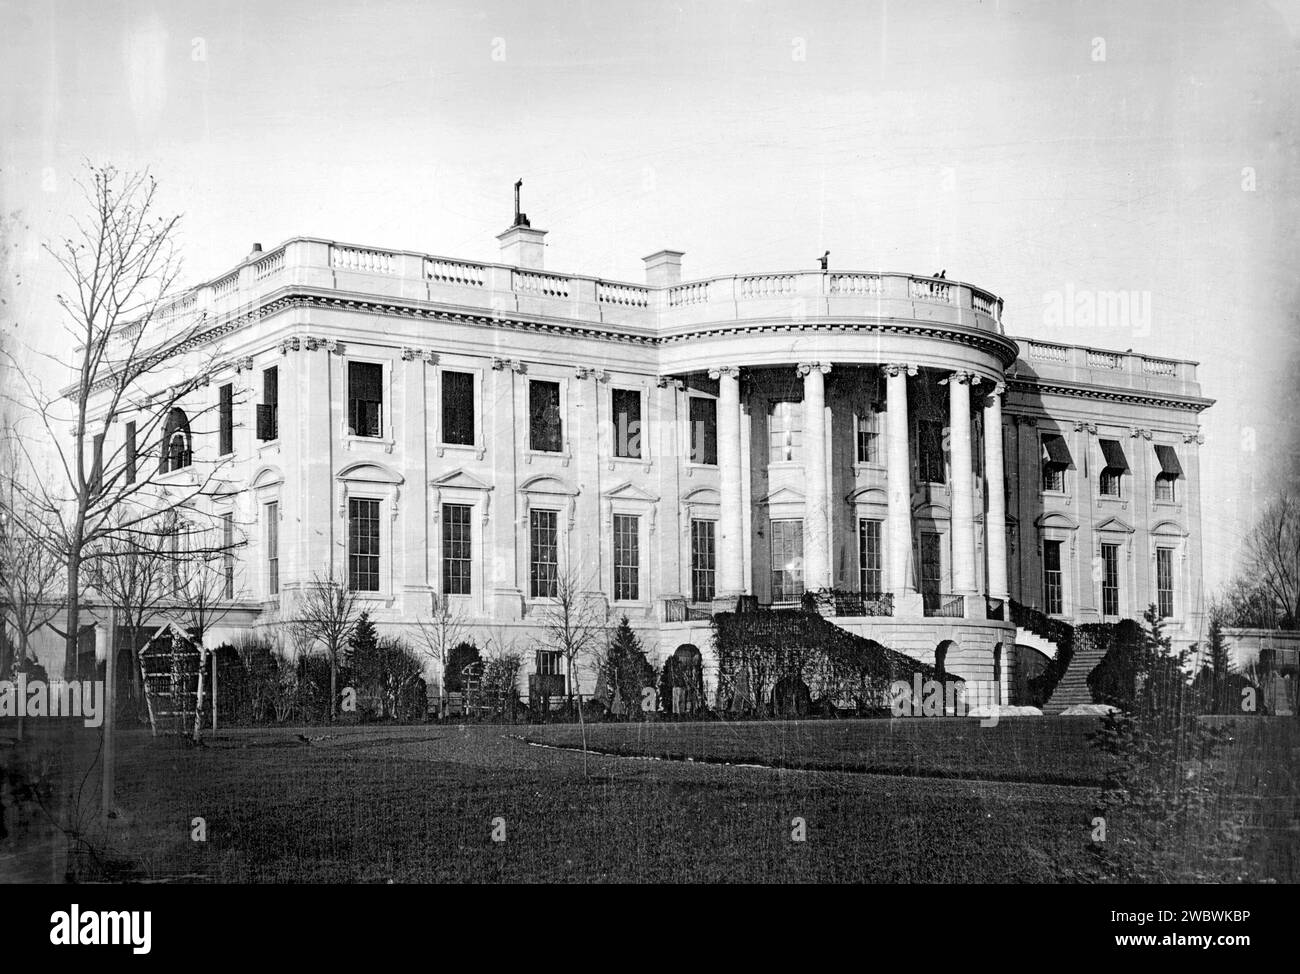 Maison Blanche 1800s. La plus ancienne photographie connue de la Maison Blanche, prise vers 1846 par John Plumbe sous l'administration de James K. Polk Banque D'Images